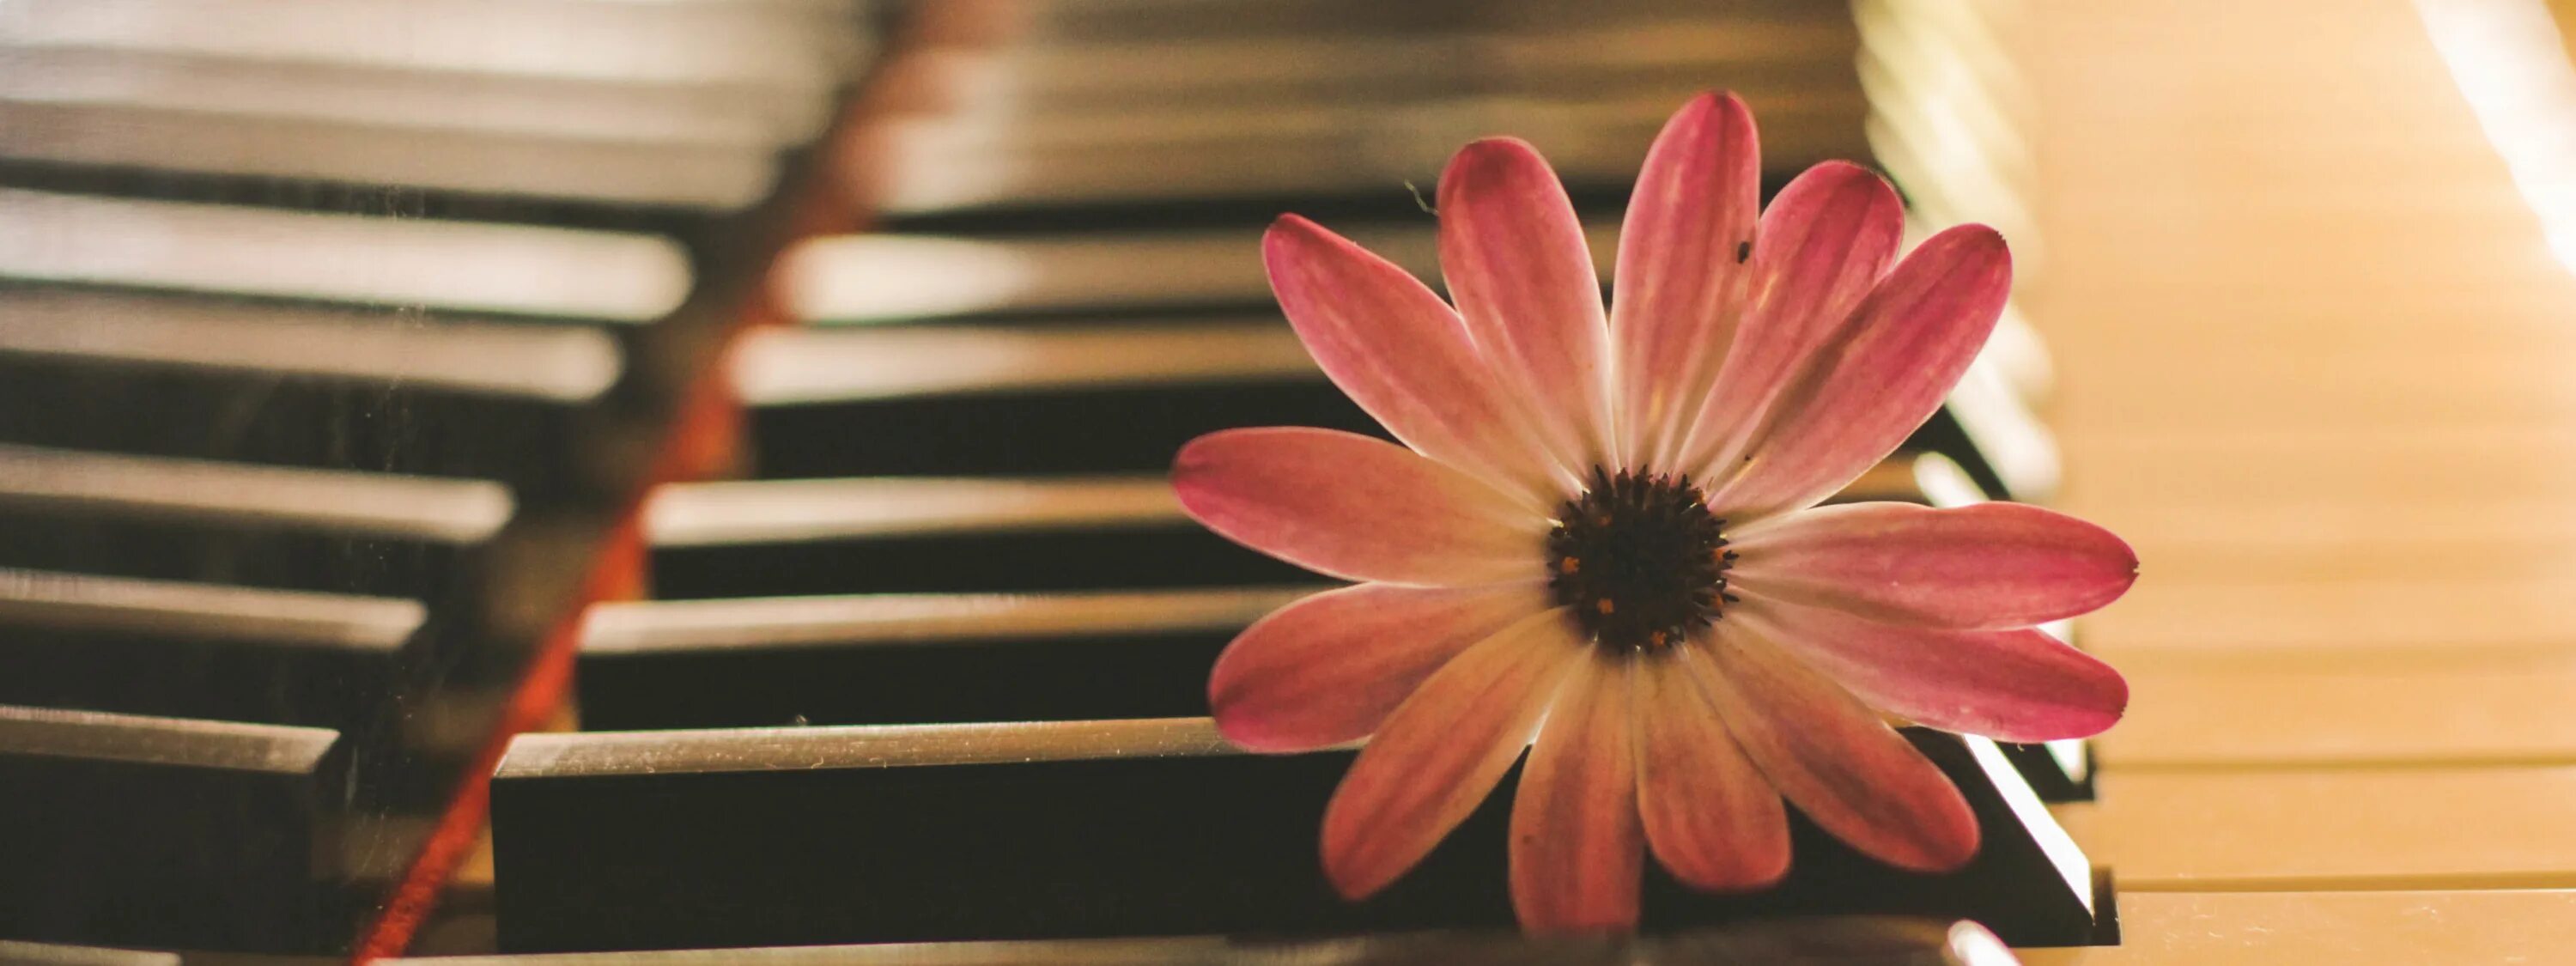 Включи песню цветы. Фортепиано с цветами. Музыкальные инструменты и цветы. Фортепьяно в цветах. Цветы на пианино.